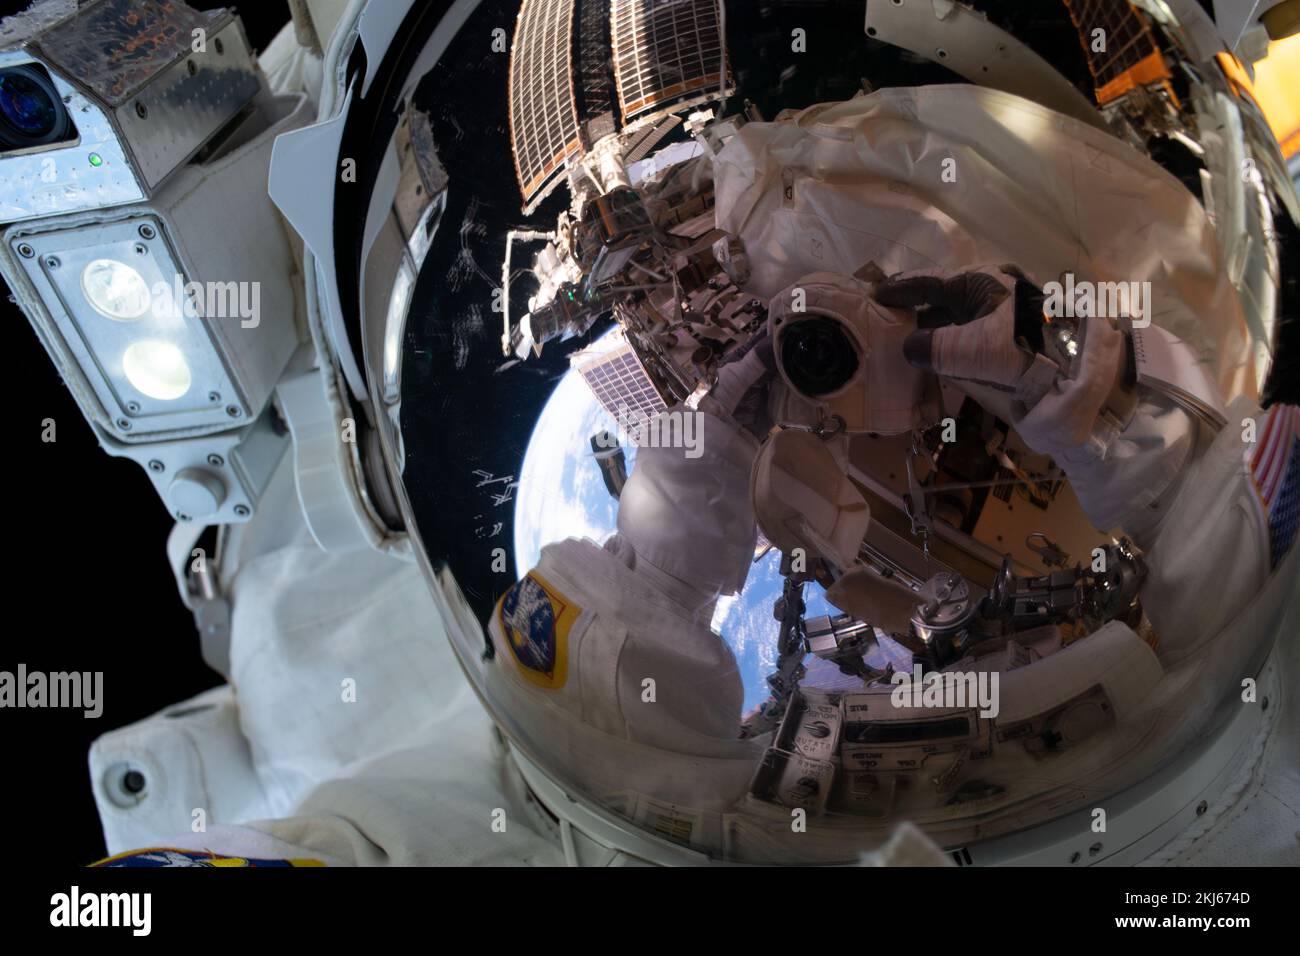 Estación Espacial Internacional, Orbita Terrestre. 15 de noviembre de 2022. El astronauta de la NASA y el ingeniero de vuelo de la Expedición 68 Frank Rubio toma un selfie durante una caminata espacial fuera de la Estación Espacial Internacional, el 15 de noviembre de 2022 en órbita terrestre. La caminata espacial de 7 horas y 11 minutos para montar un soporte de montaje fue la primera para Rubio y su compañero Josh Cascada. Crédito: Frank Rubio/NASA/Alamy Live News Foto de stock